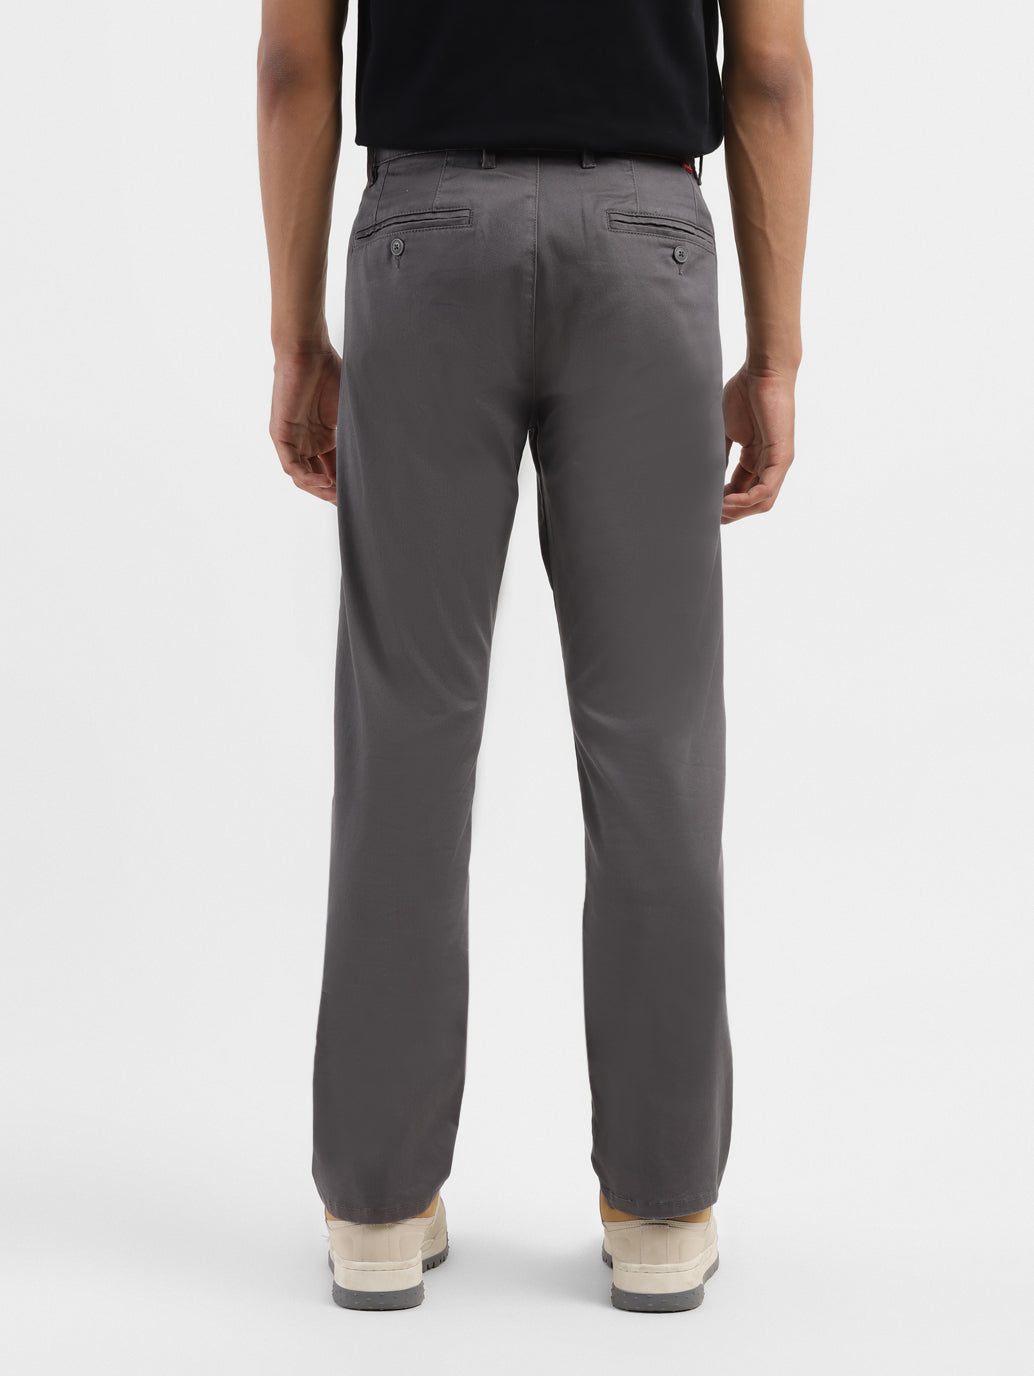 Men's Men's Grey Slim Fit Trousers